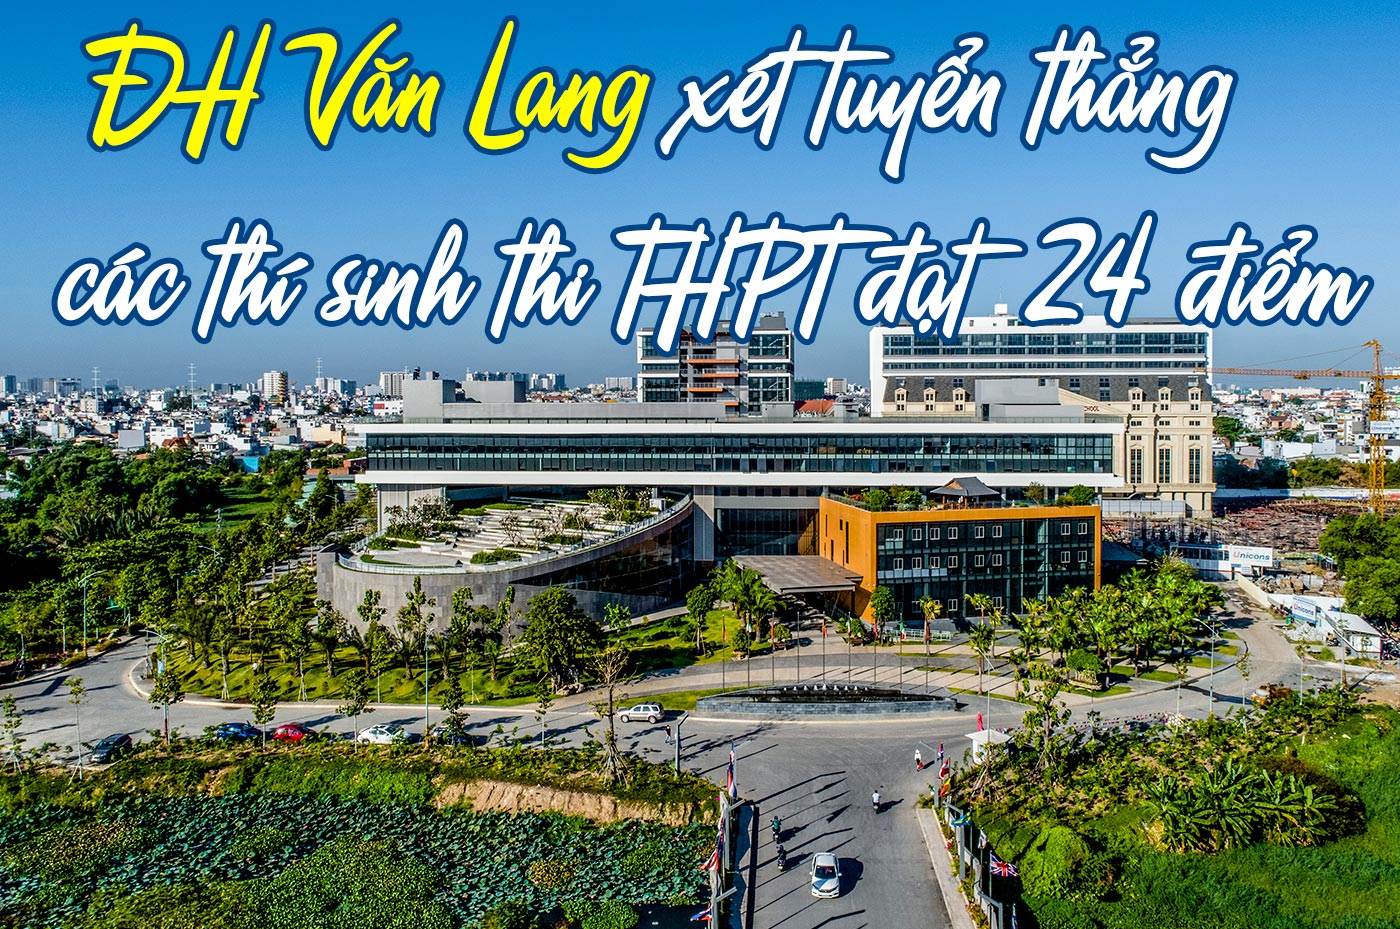 ĐH Văn Lang xét tuyển thẳng các thí sinh thi THPT đạt 24 điểm - Ảnh 1